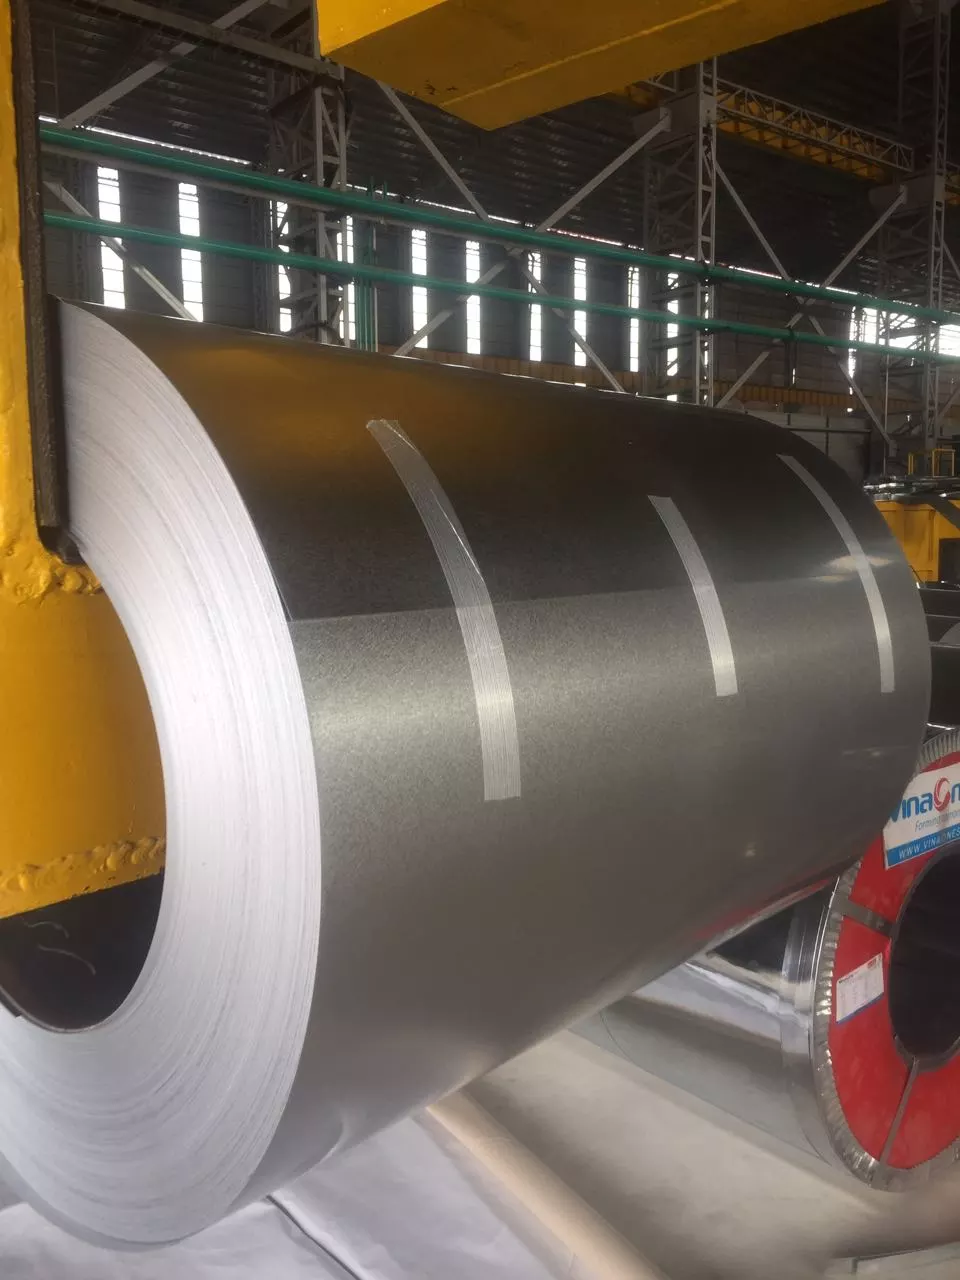 aluminium zinc coated steel coils manufacturer in Vietnam   VSS Steel